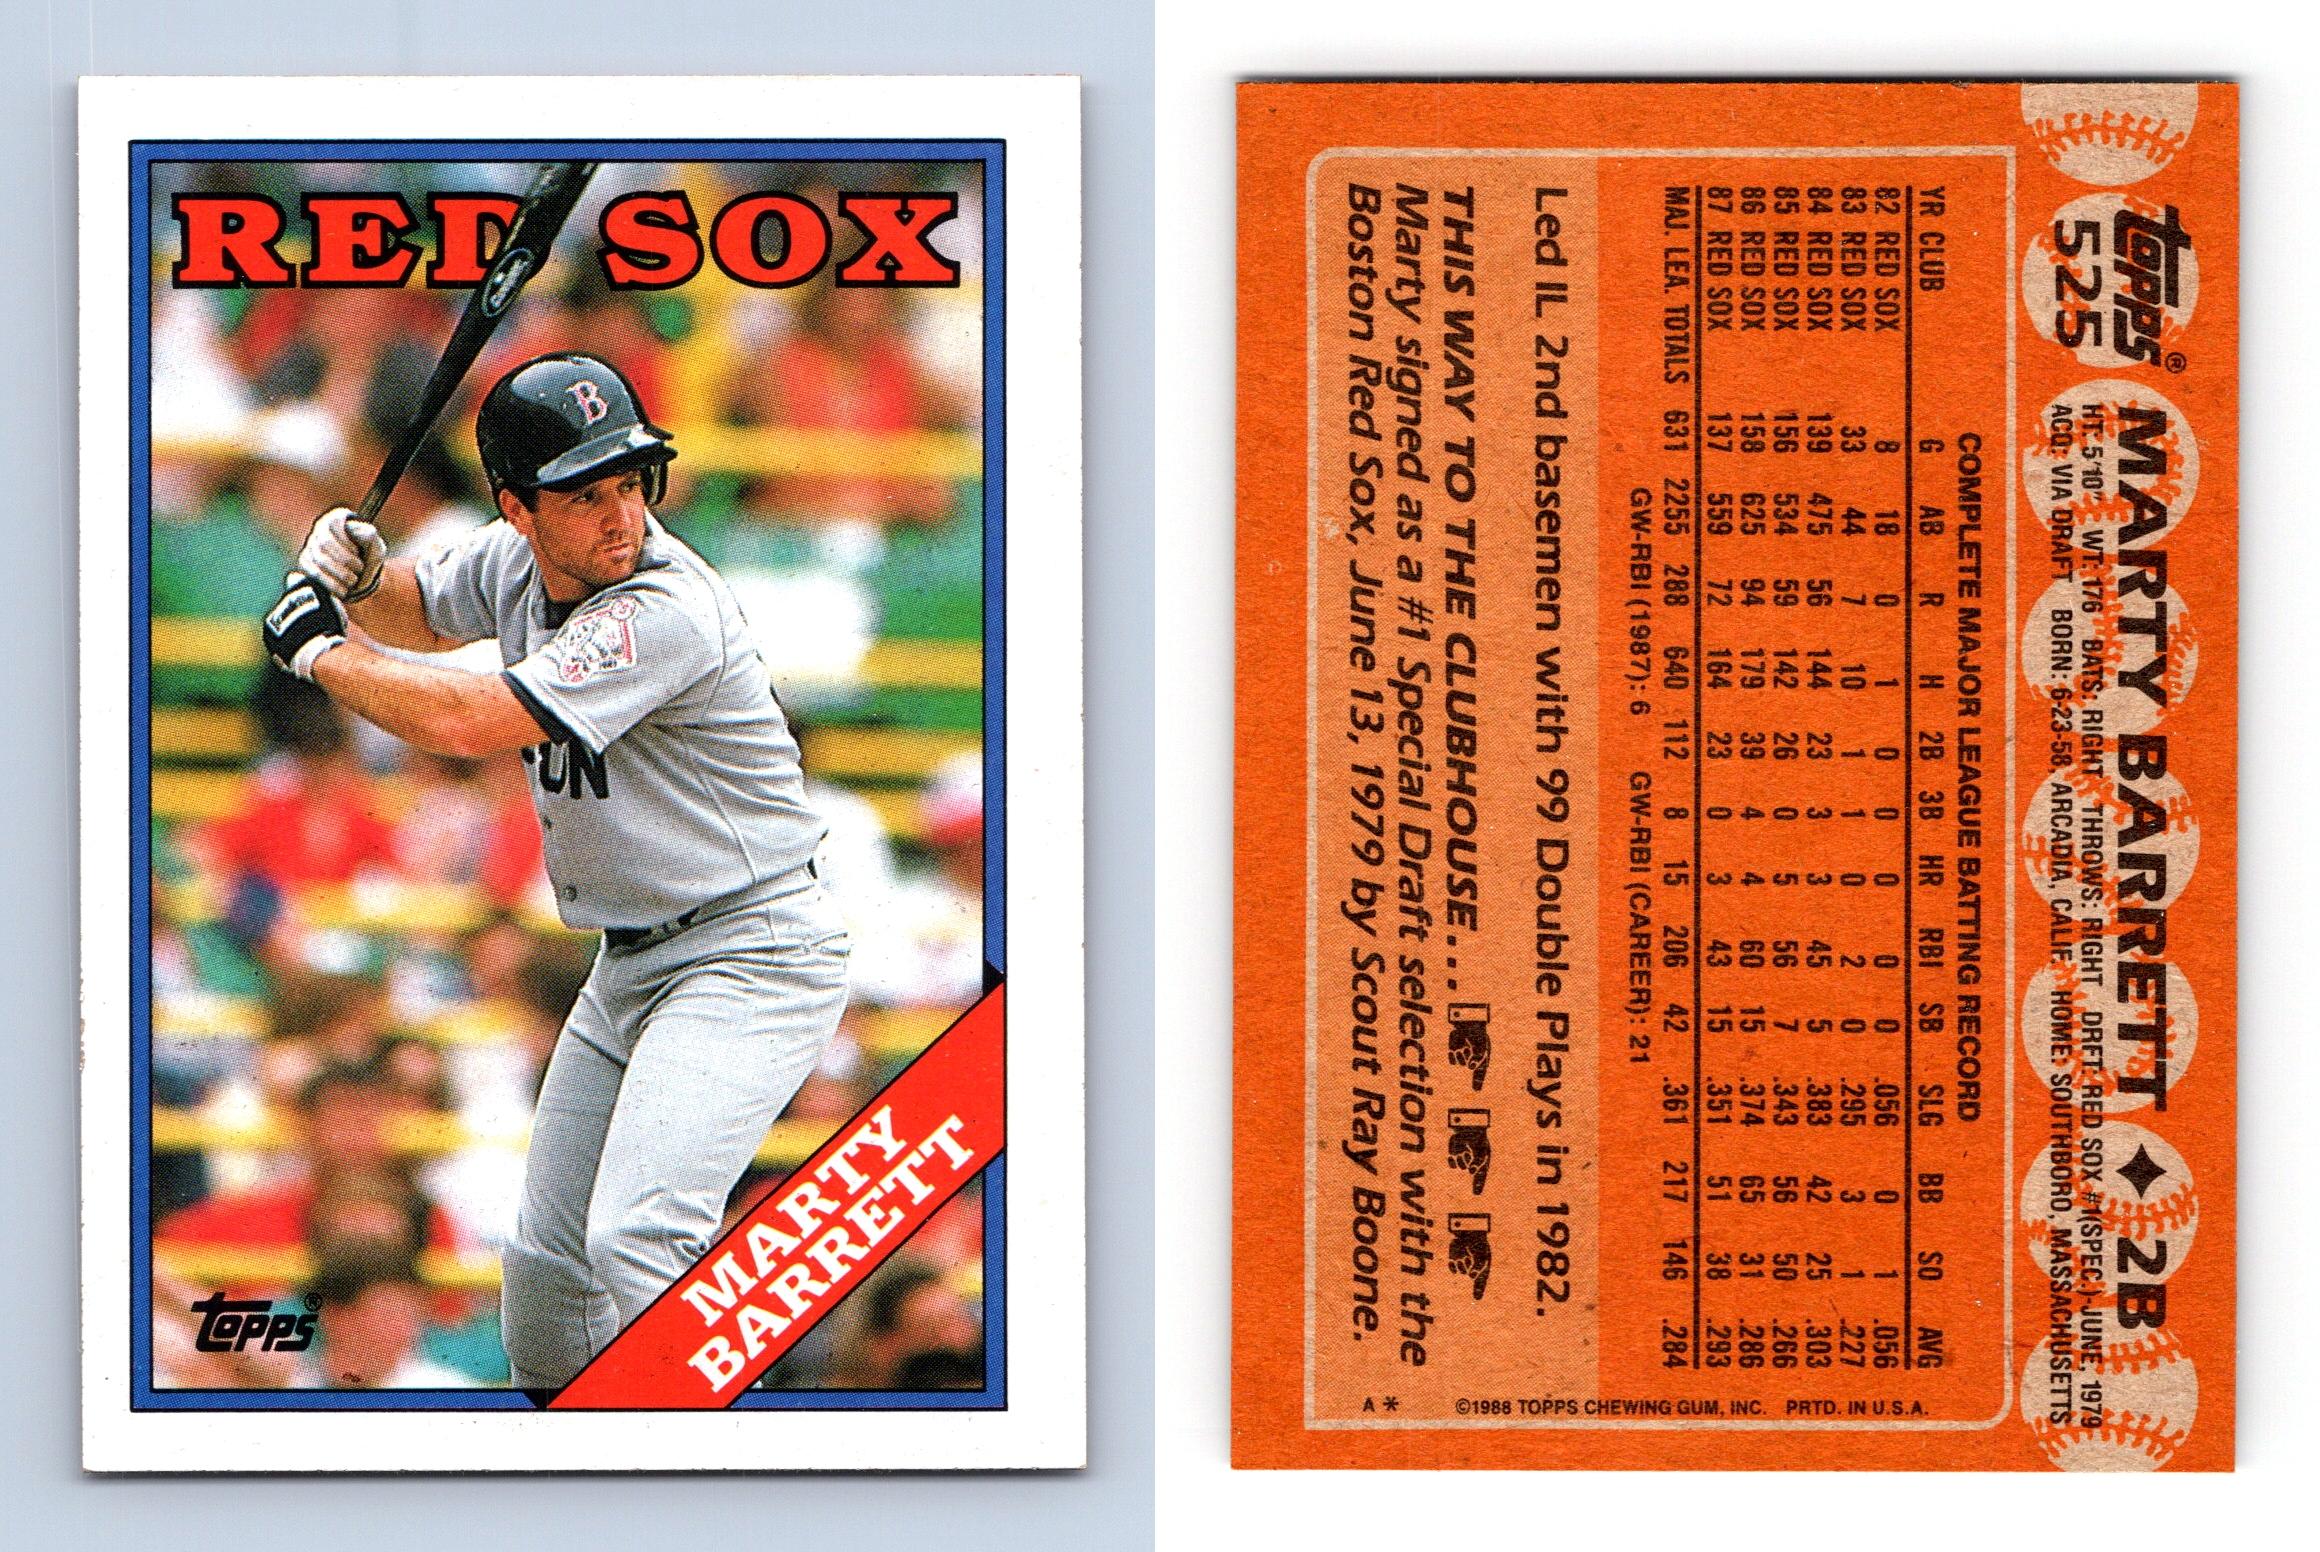 1988 Topps Baseball Card #493 Mike Greenwell Mint